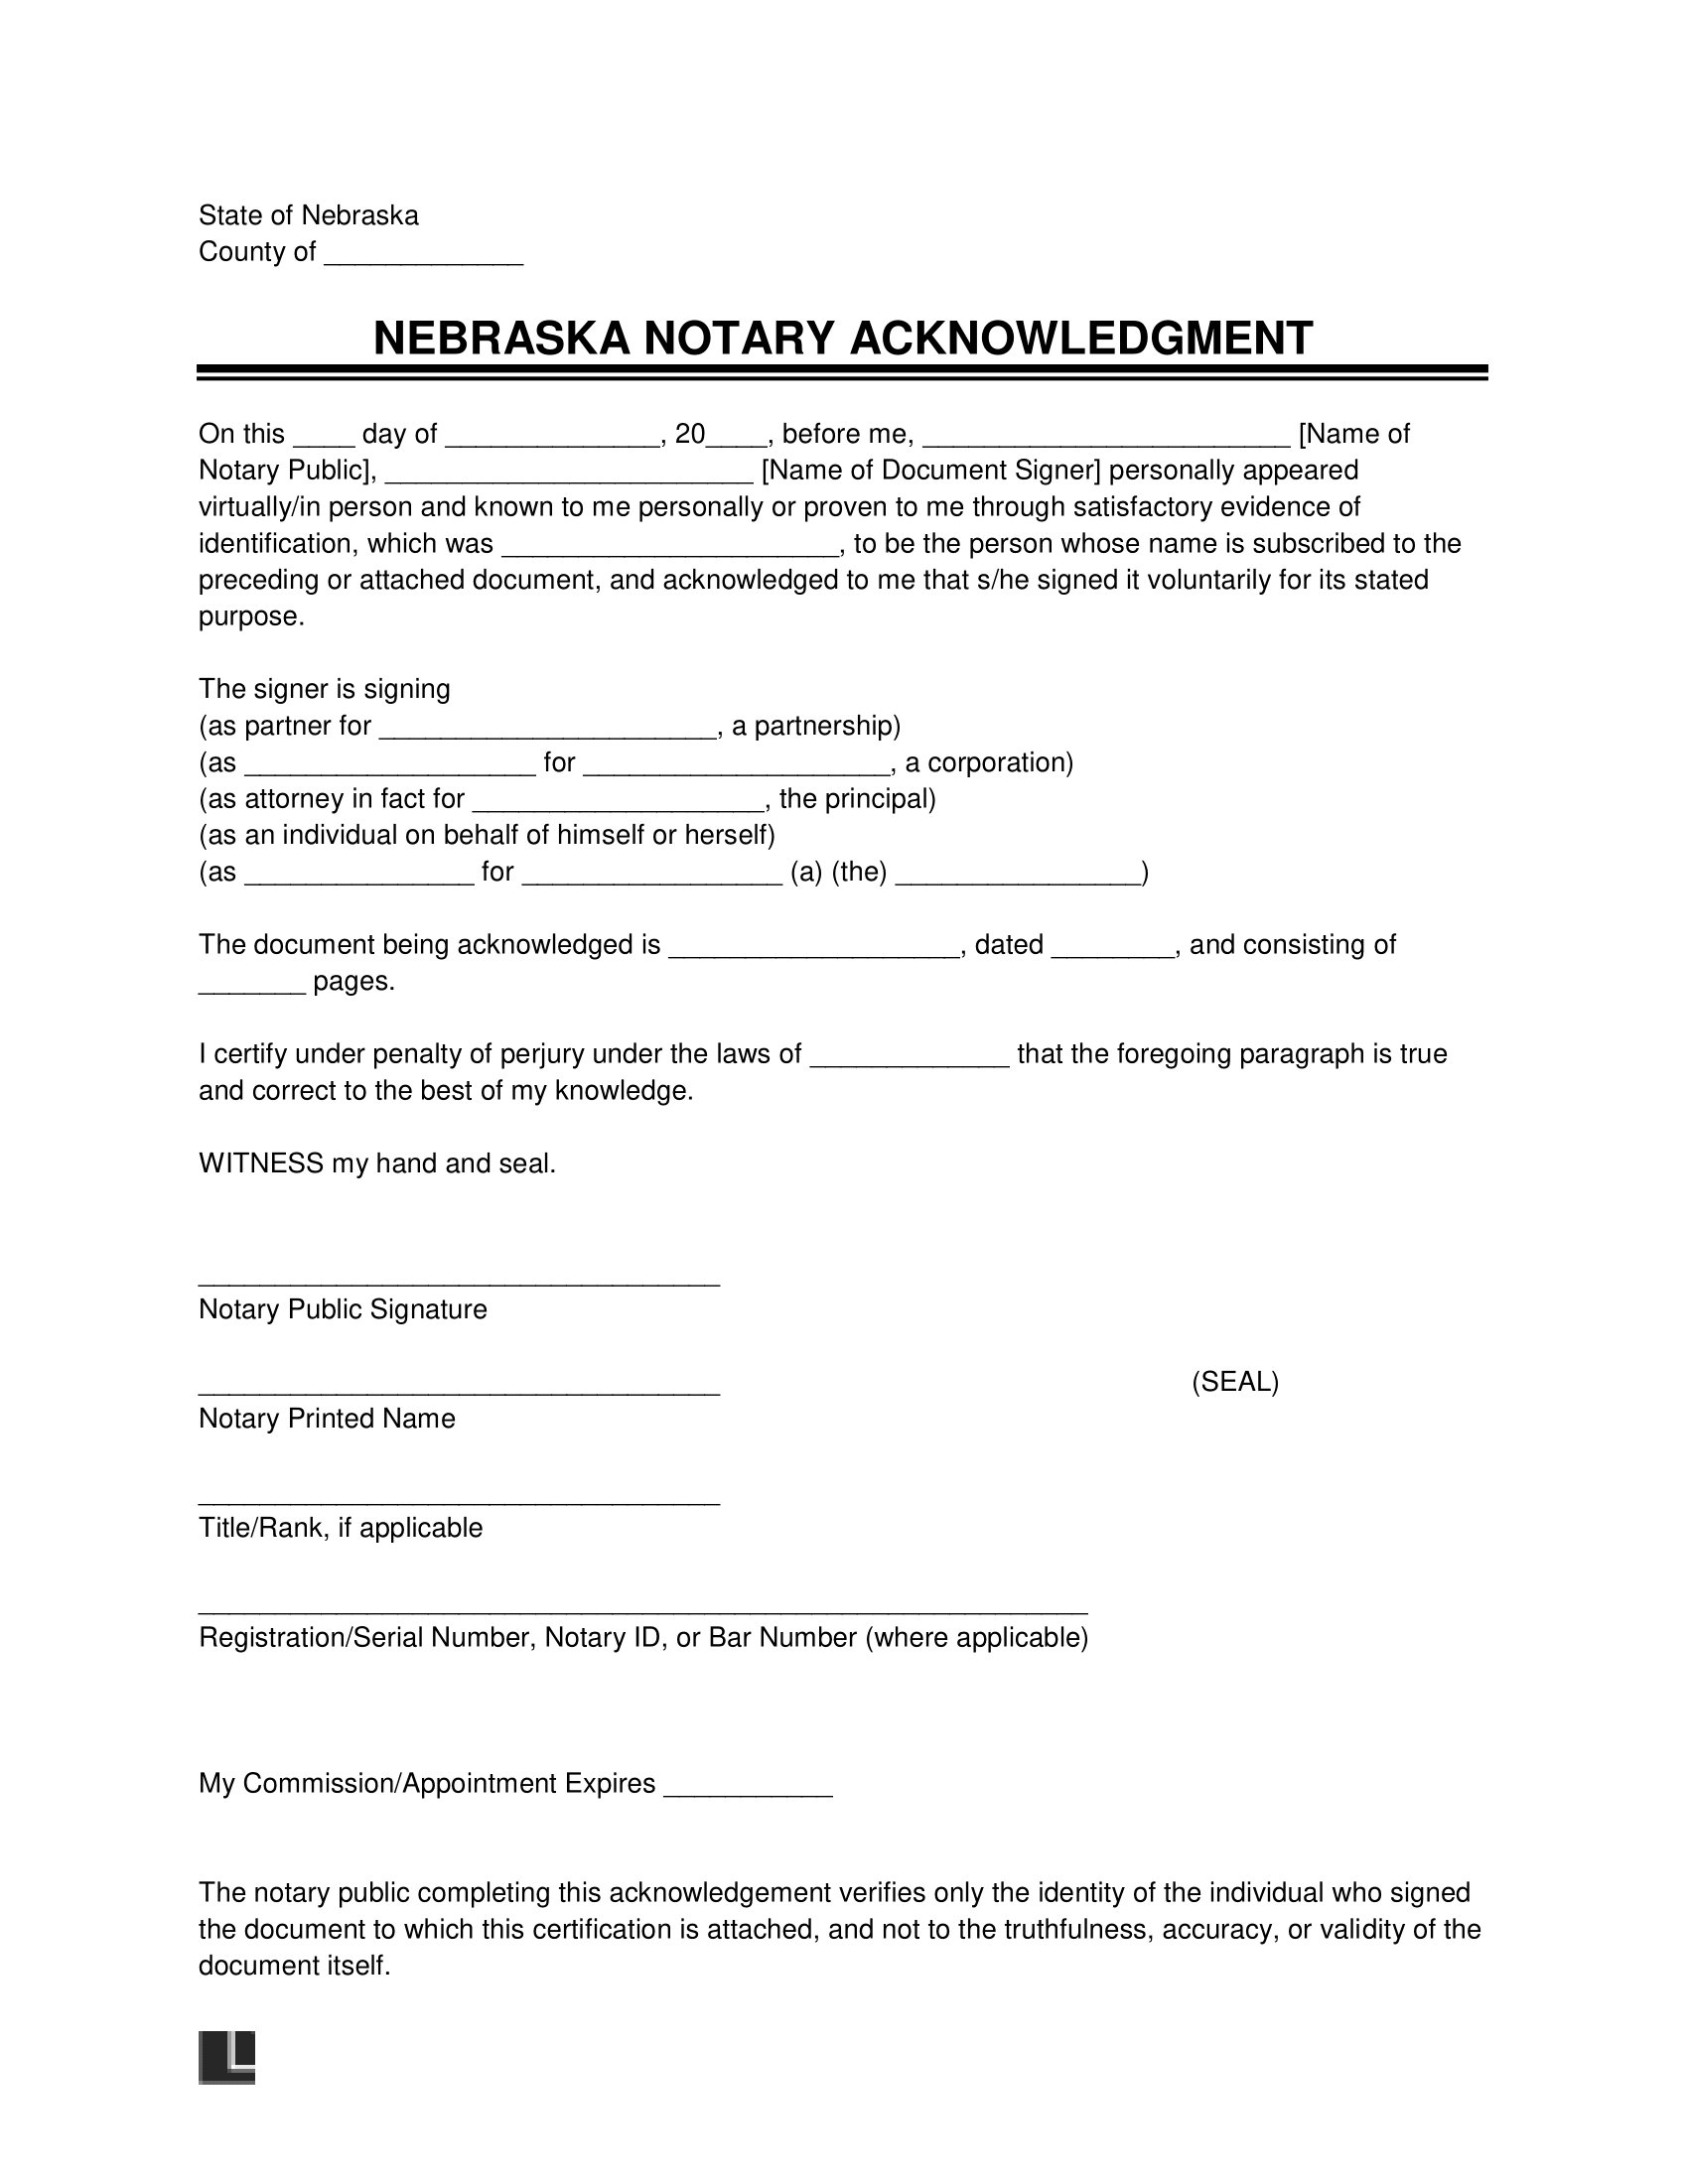 Nebraska Notary Acknowledgement Form